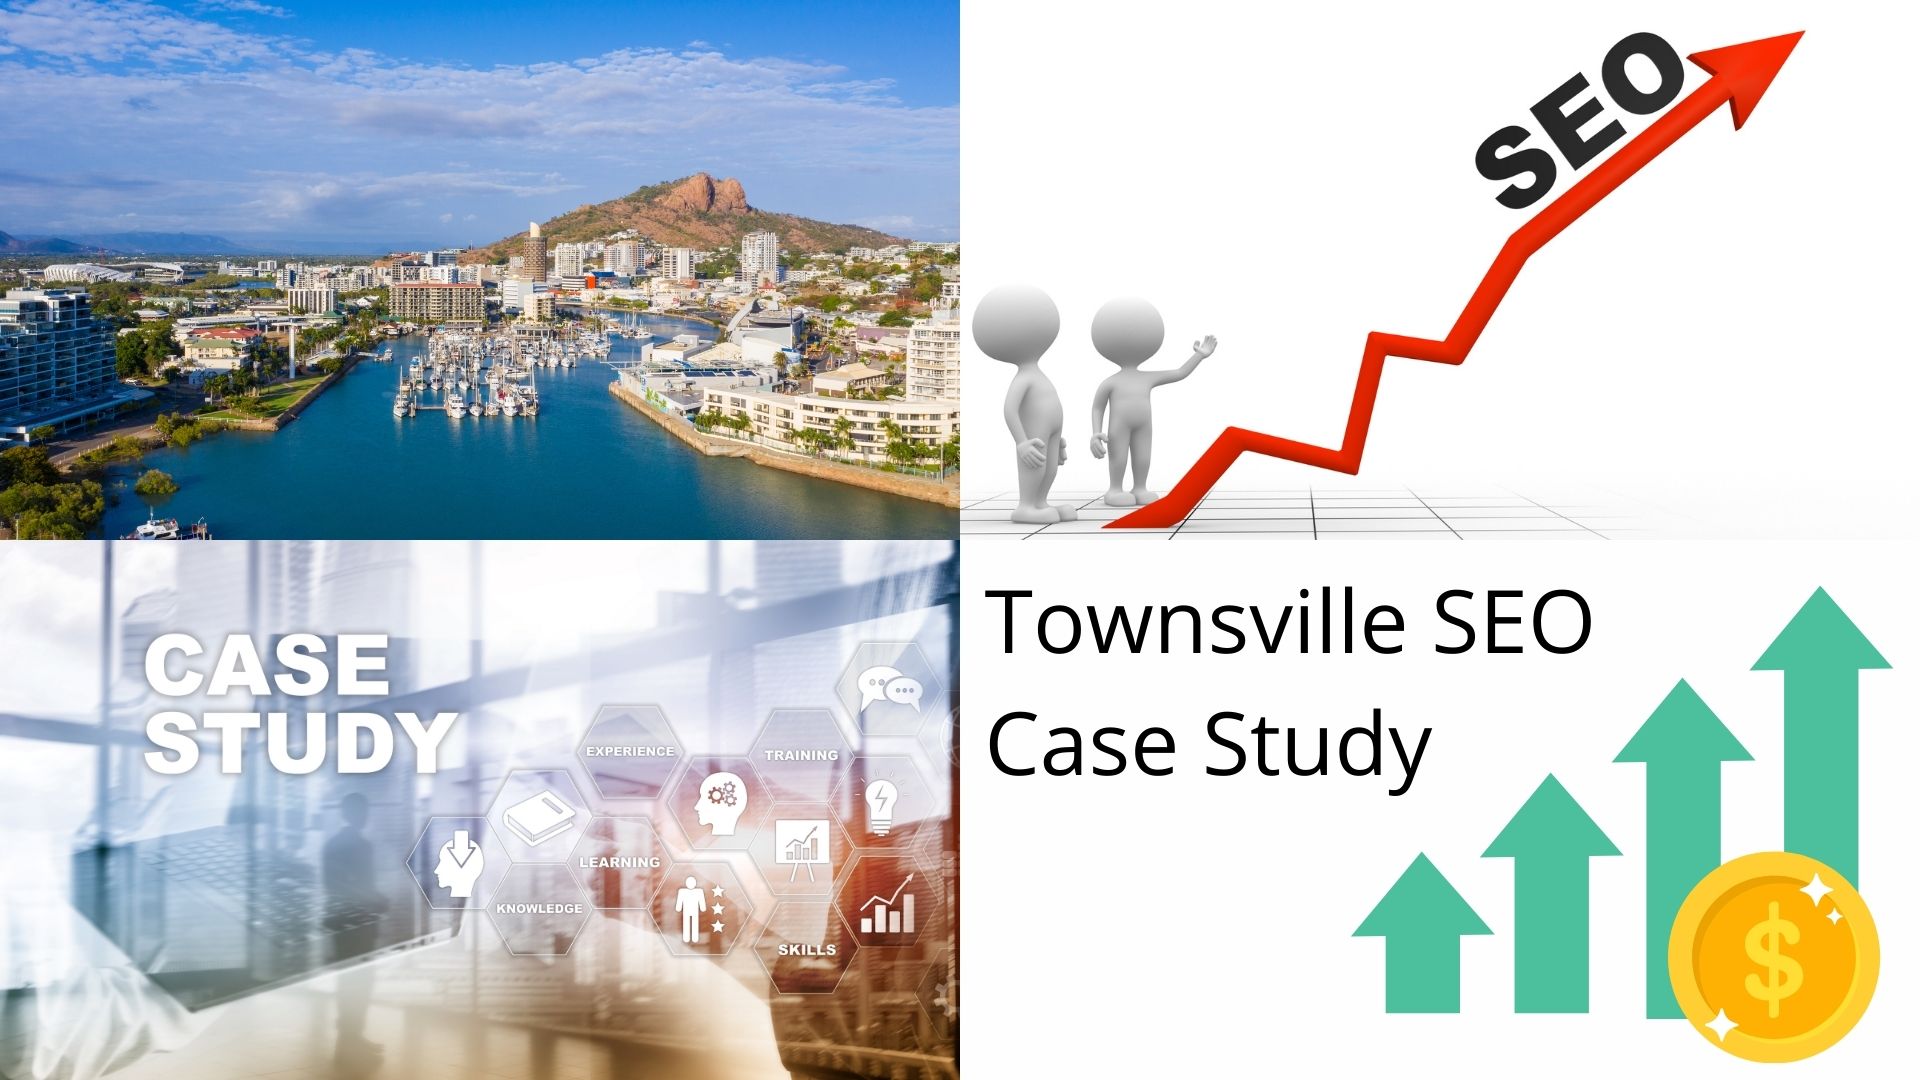 Townsville SEO Case Study